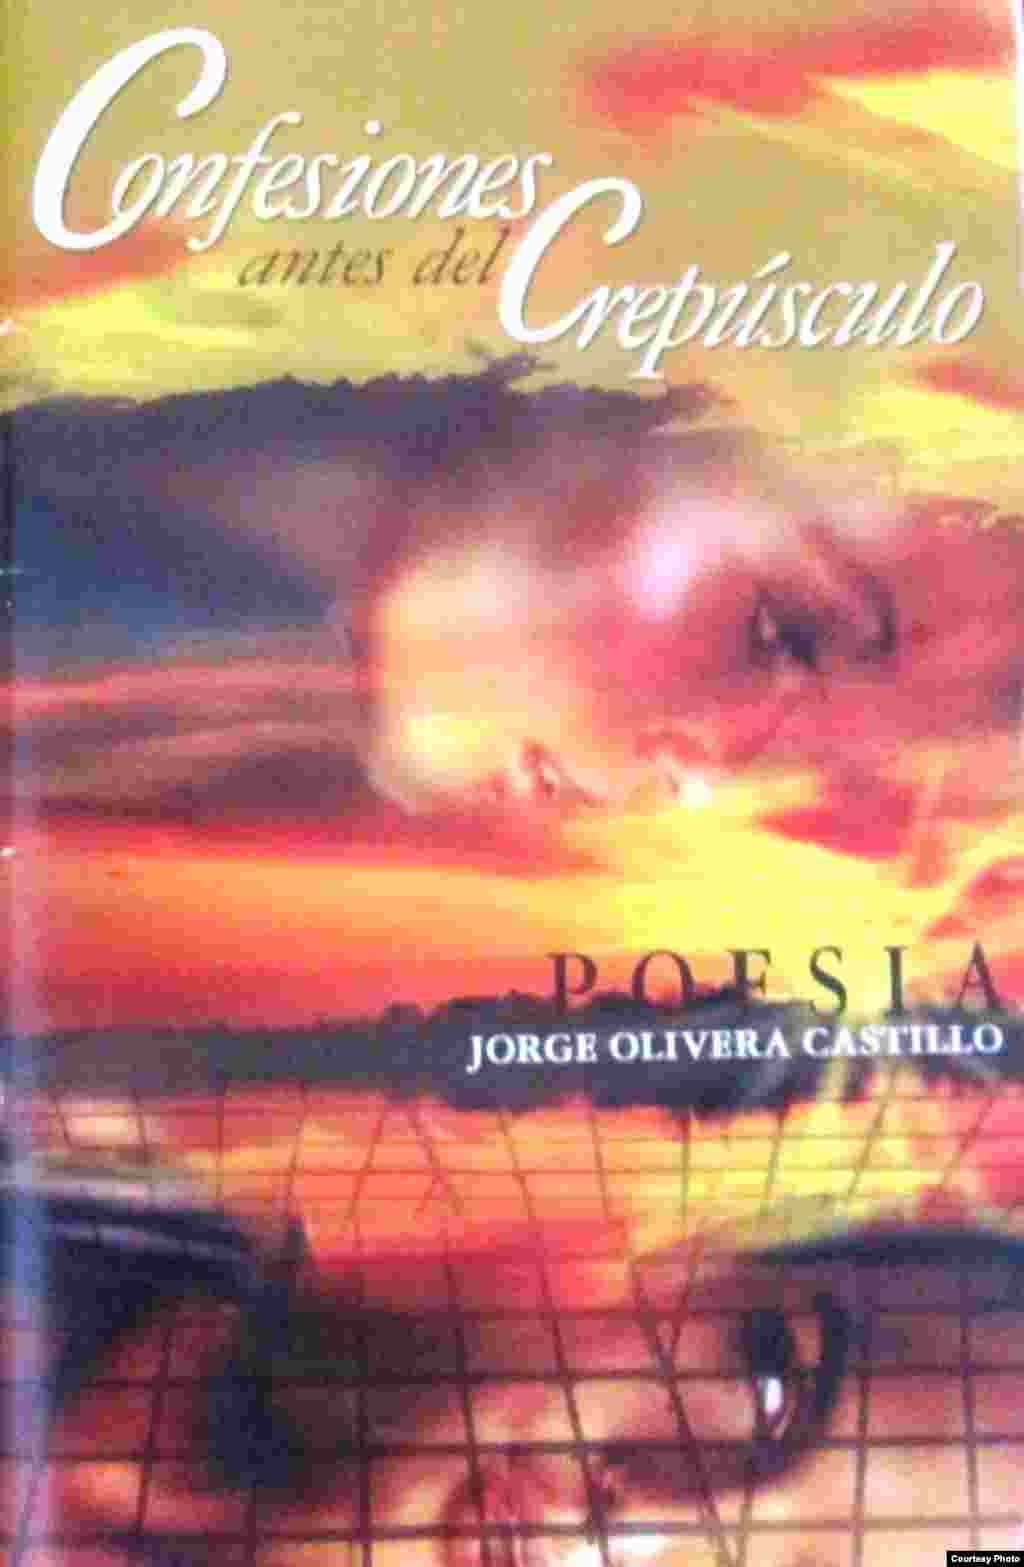 Confesiones antes de l crepúsculo, de Jorge Olivera Castillo (Portada).